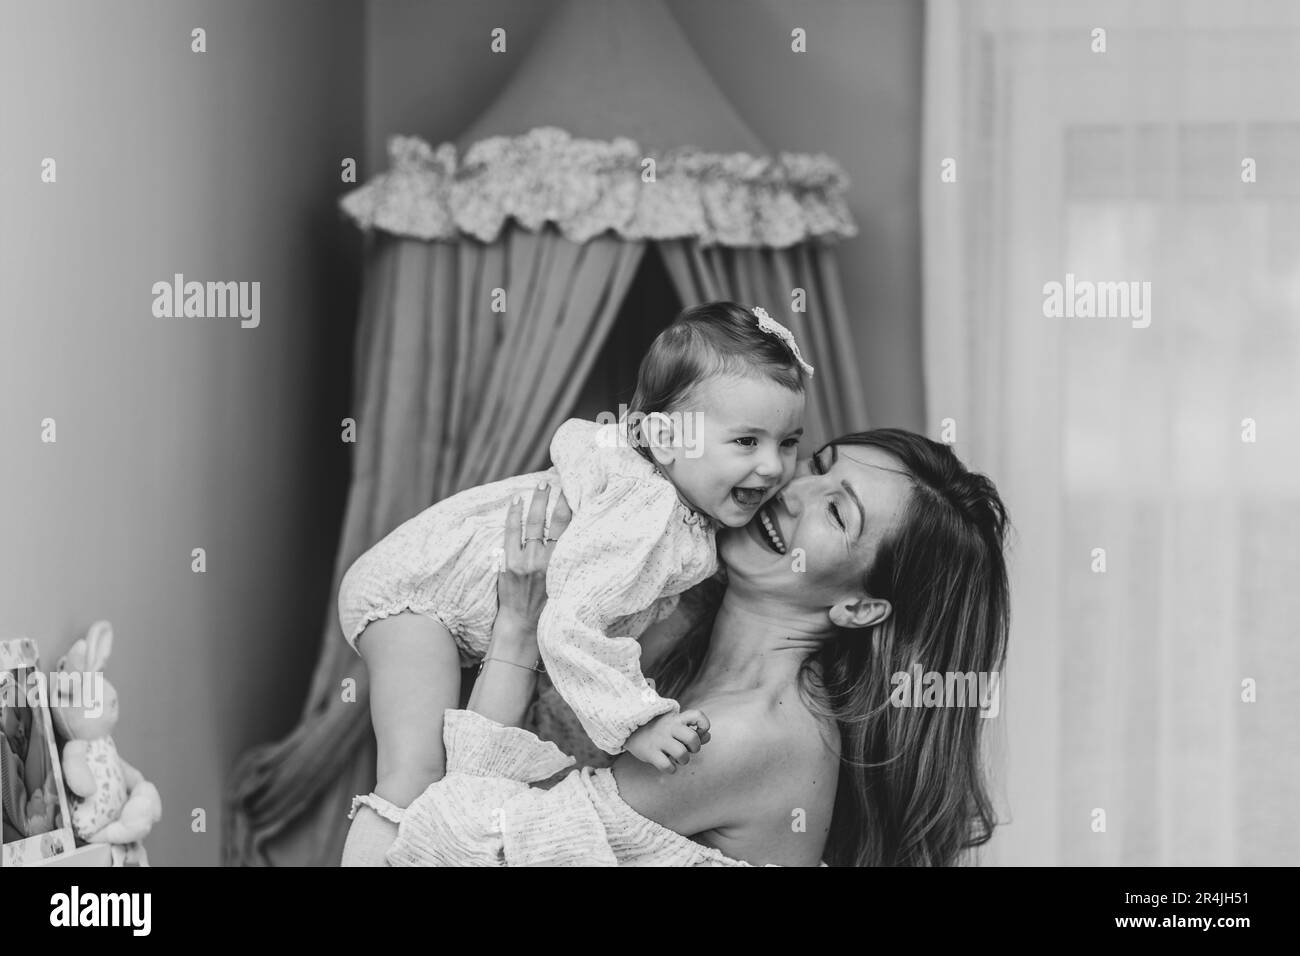 Photo en noir et blanc d'une jeune blonde, élégante mère tenant sa petite fille, l'air levant Banque D'Images